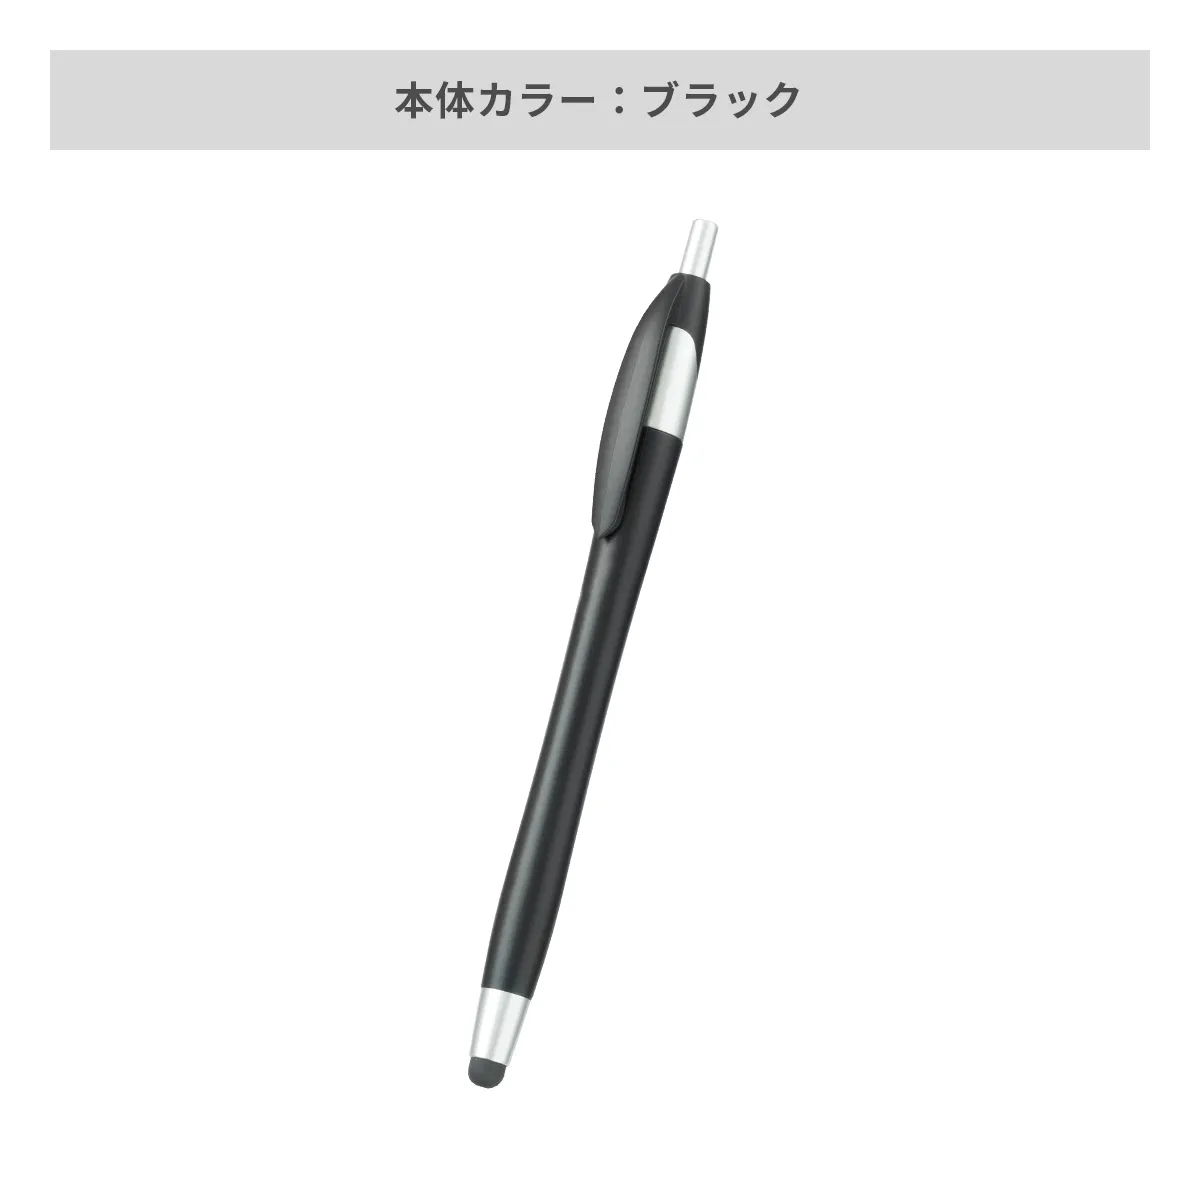 デュアルライトタッチペン【多機能ペン / パッド印刷】 画像6